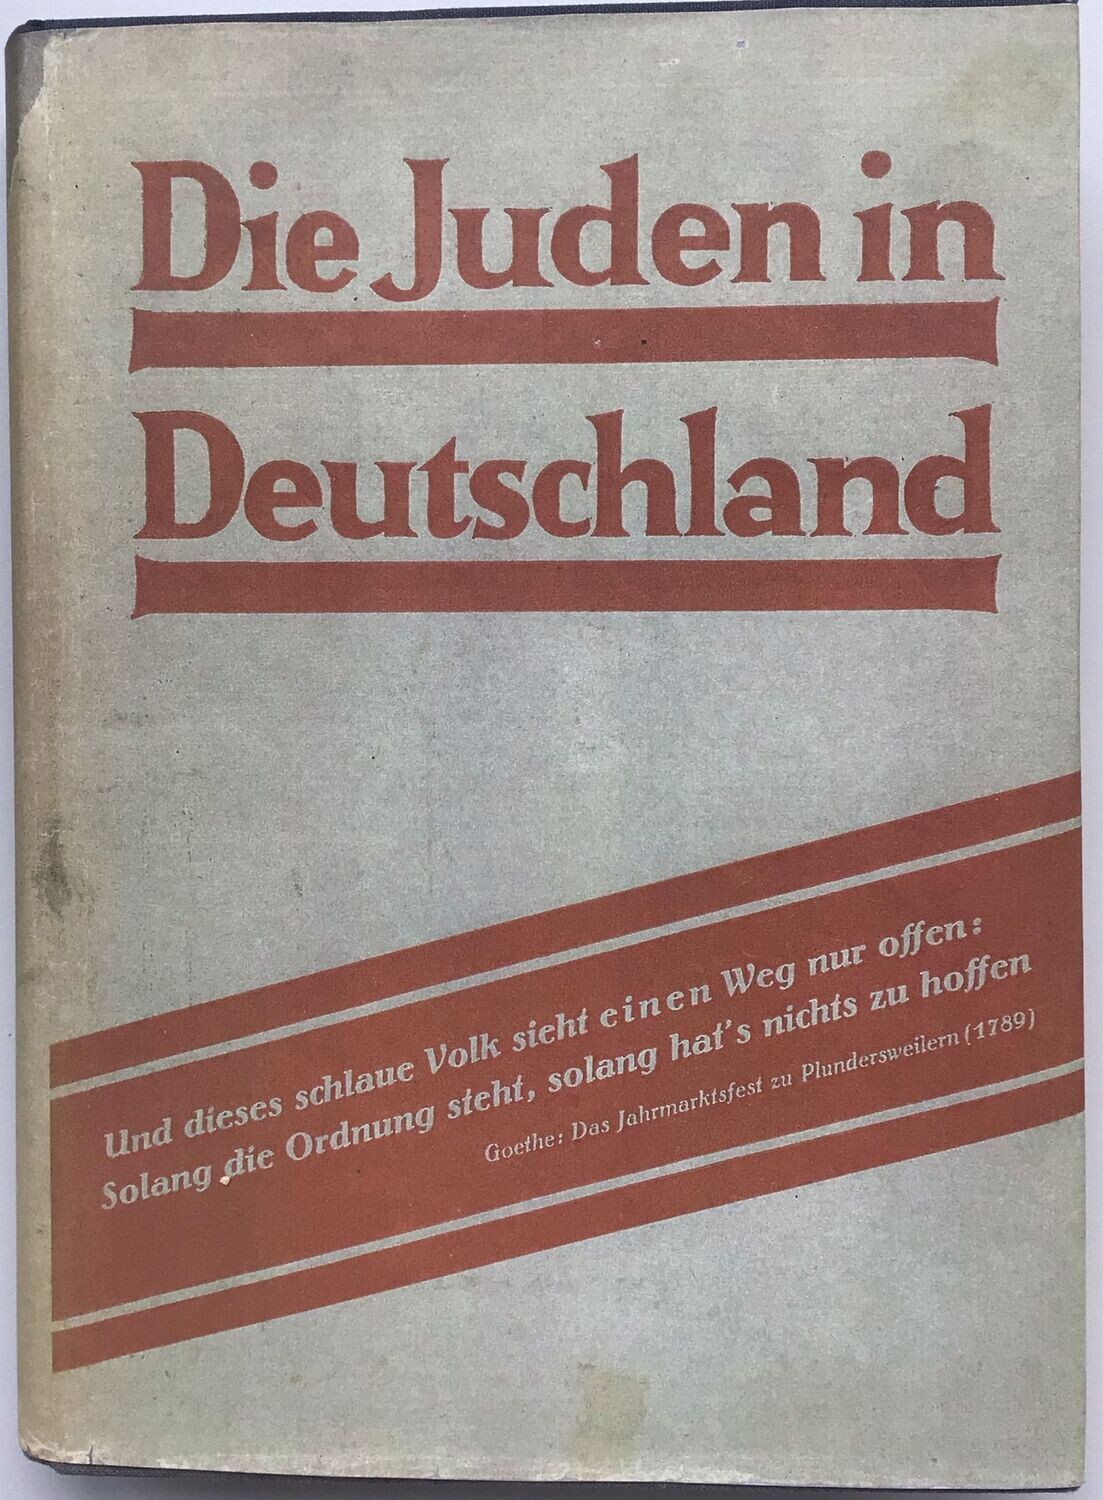 Die Juden in Deutschland - Ganzleinenausgabe (4. Auflage) aus dem Jahr 1936 mit Schutzumschlag (Kopie)